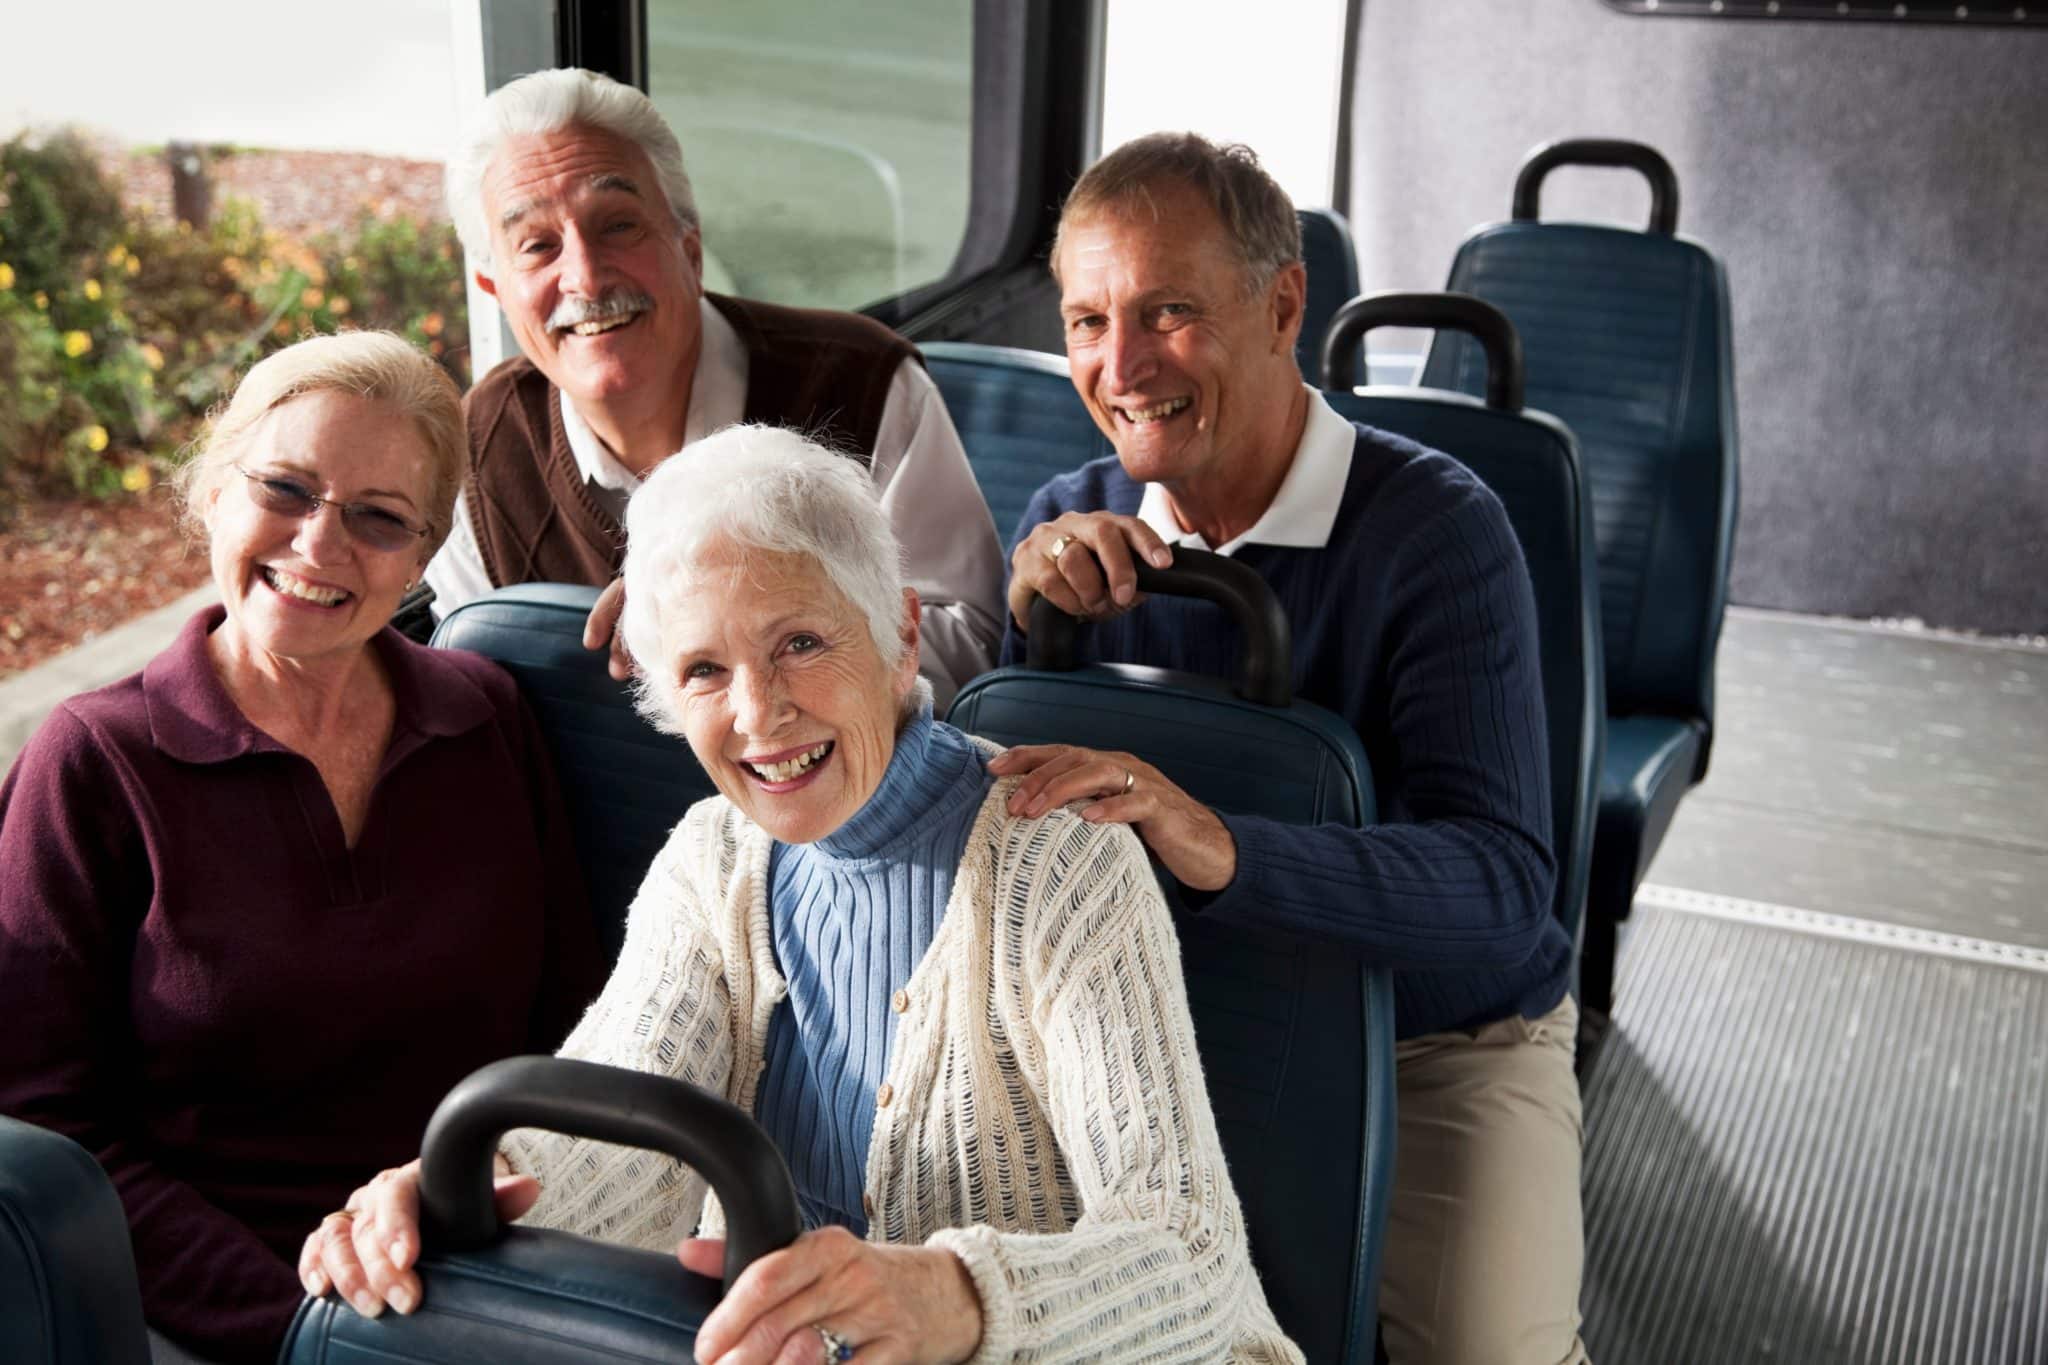 Best Bus Tours For Seniors What's Good For Seniors